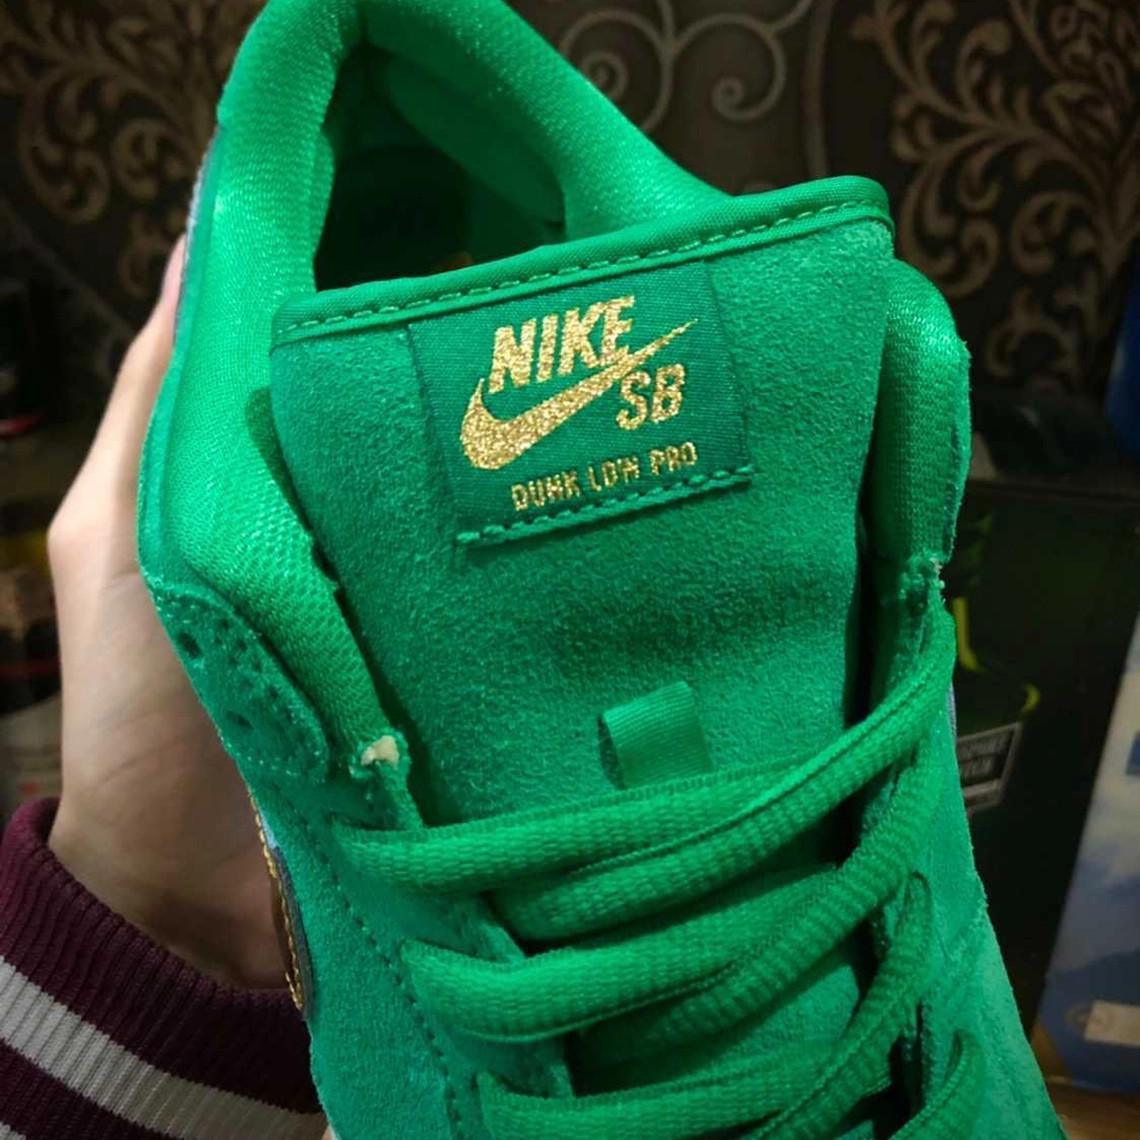 Il vous faudra un peu de chance pour obtenir un "W" sur le Nike SB Dunk Low "St. Patrick's Day" qui sortira en mars 2022.